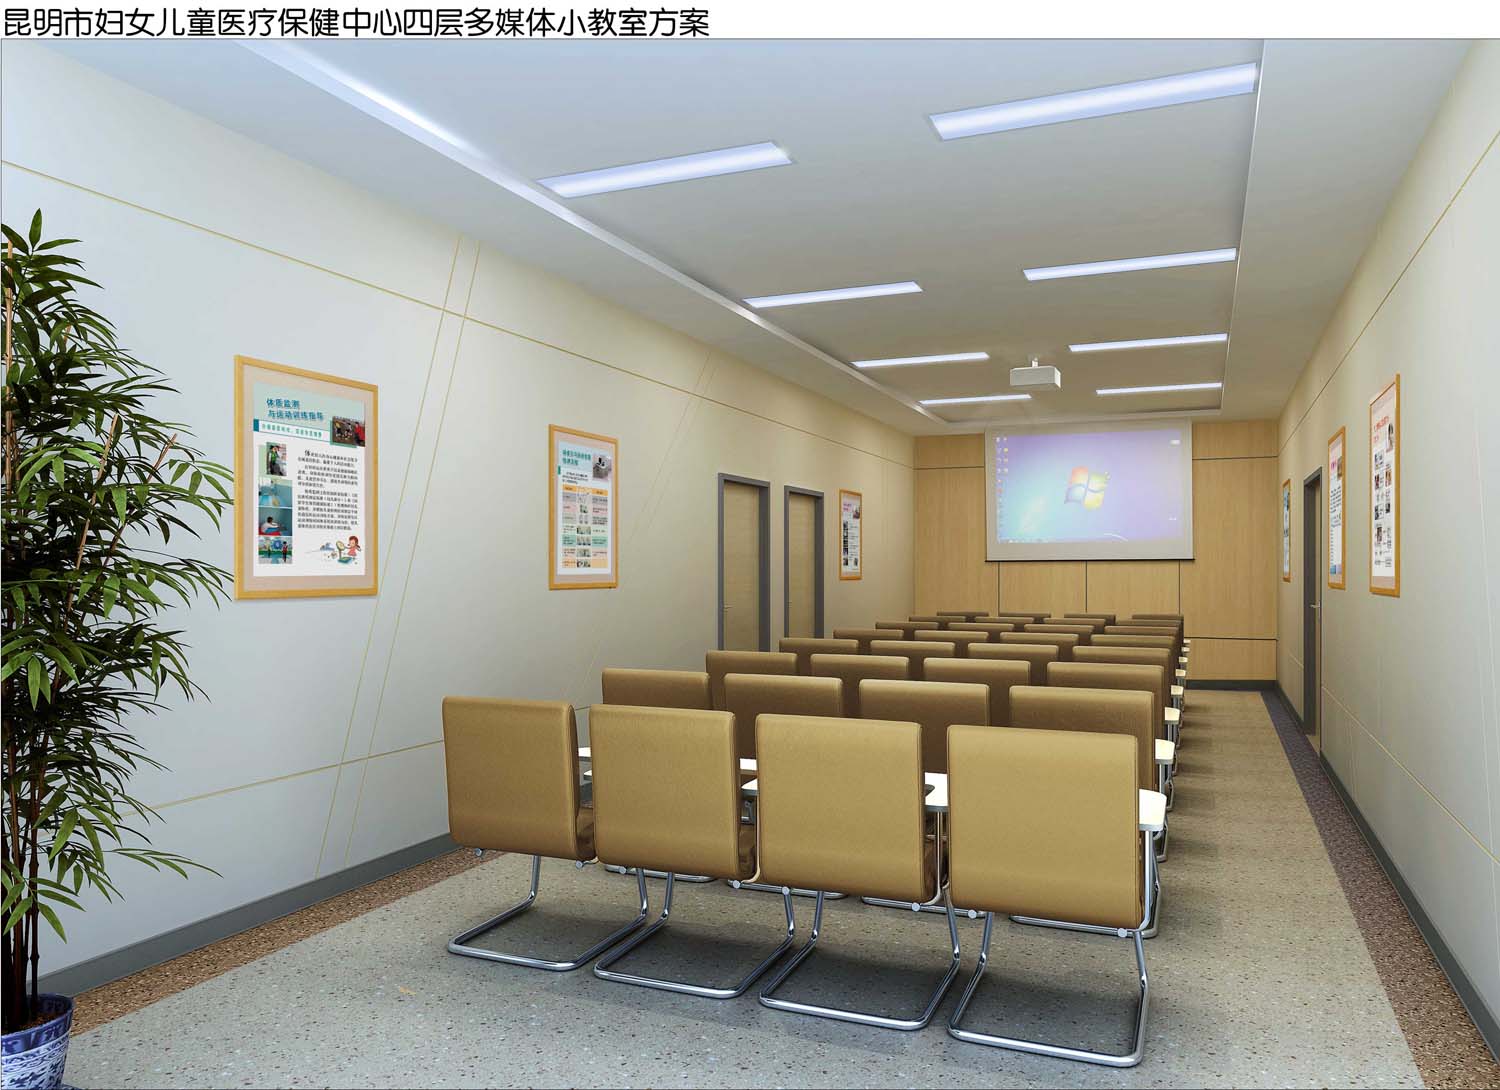 云南昆明妇幼儿童医院室内设计(图22)